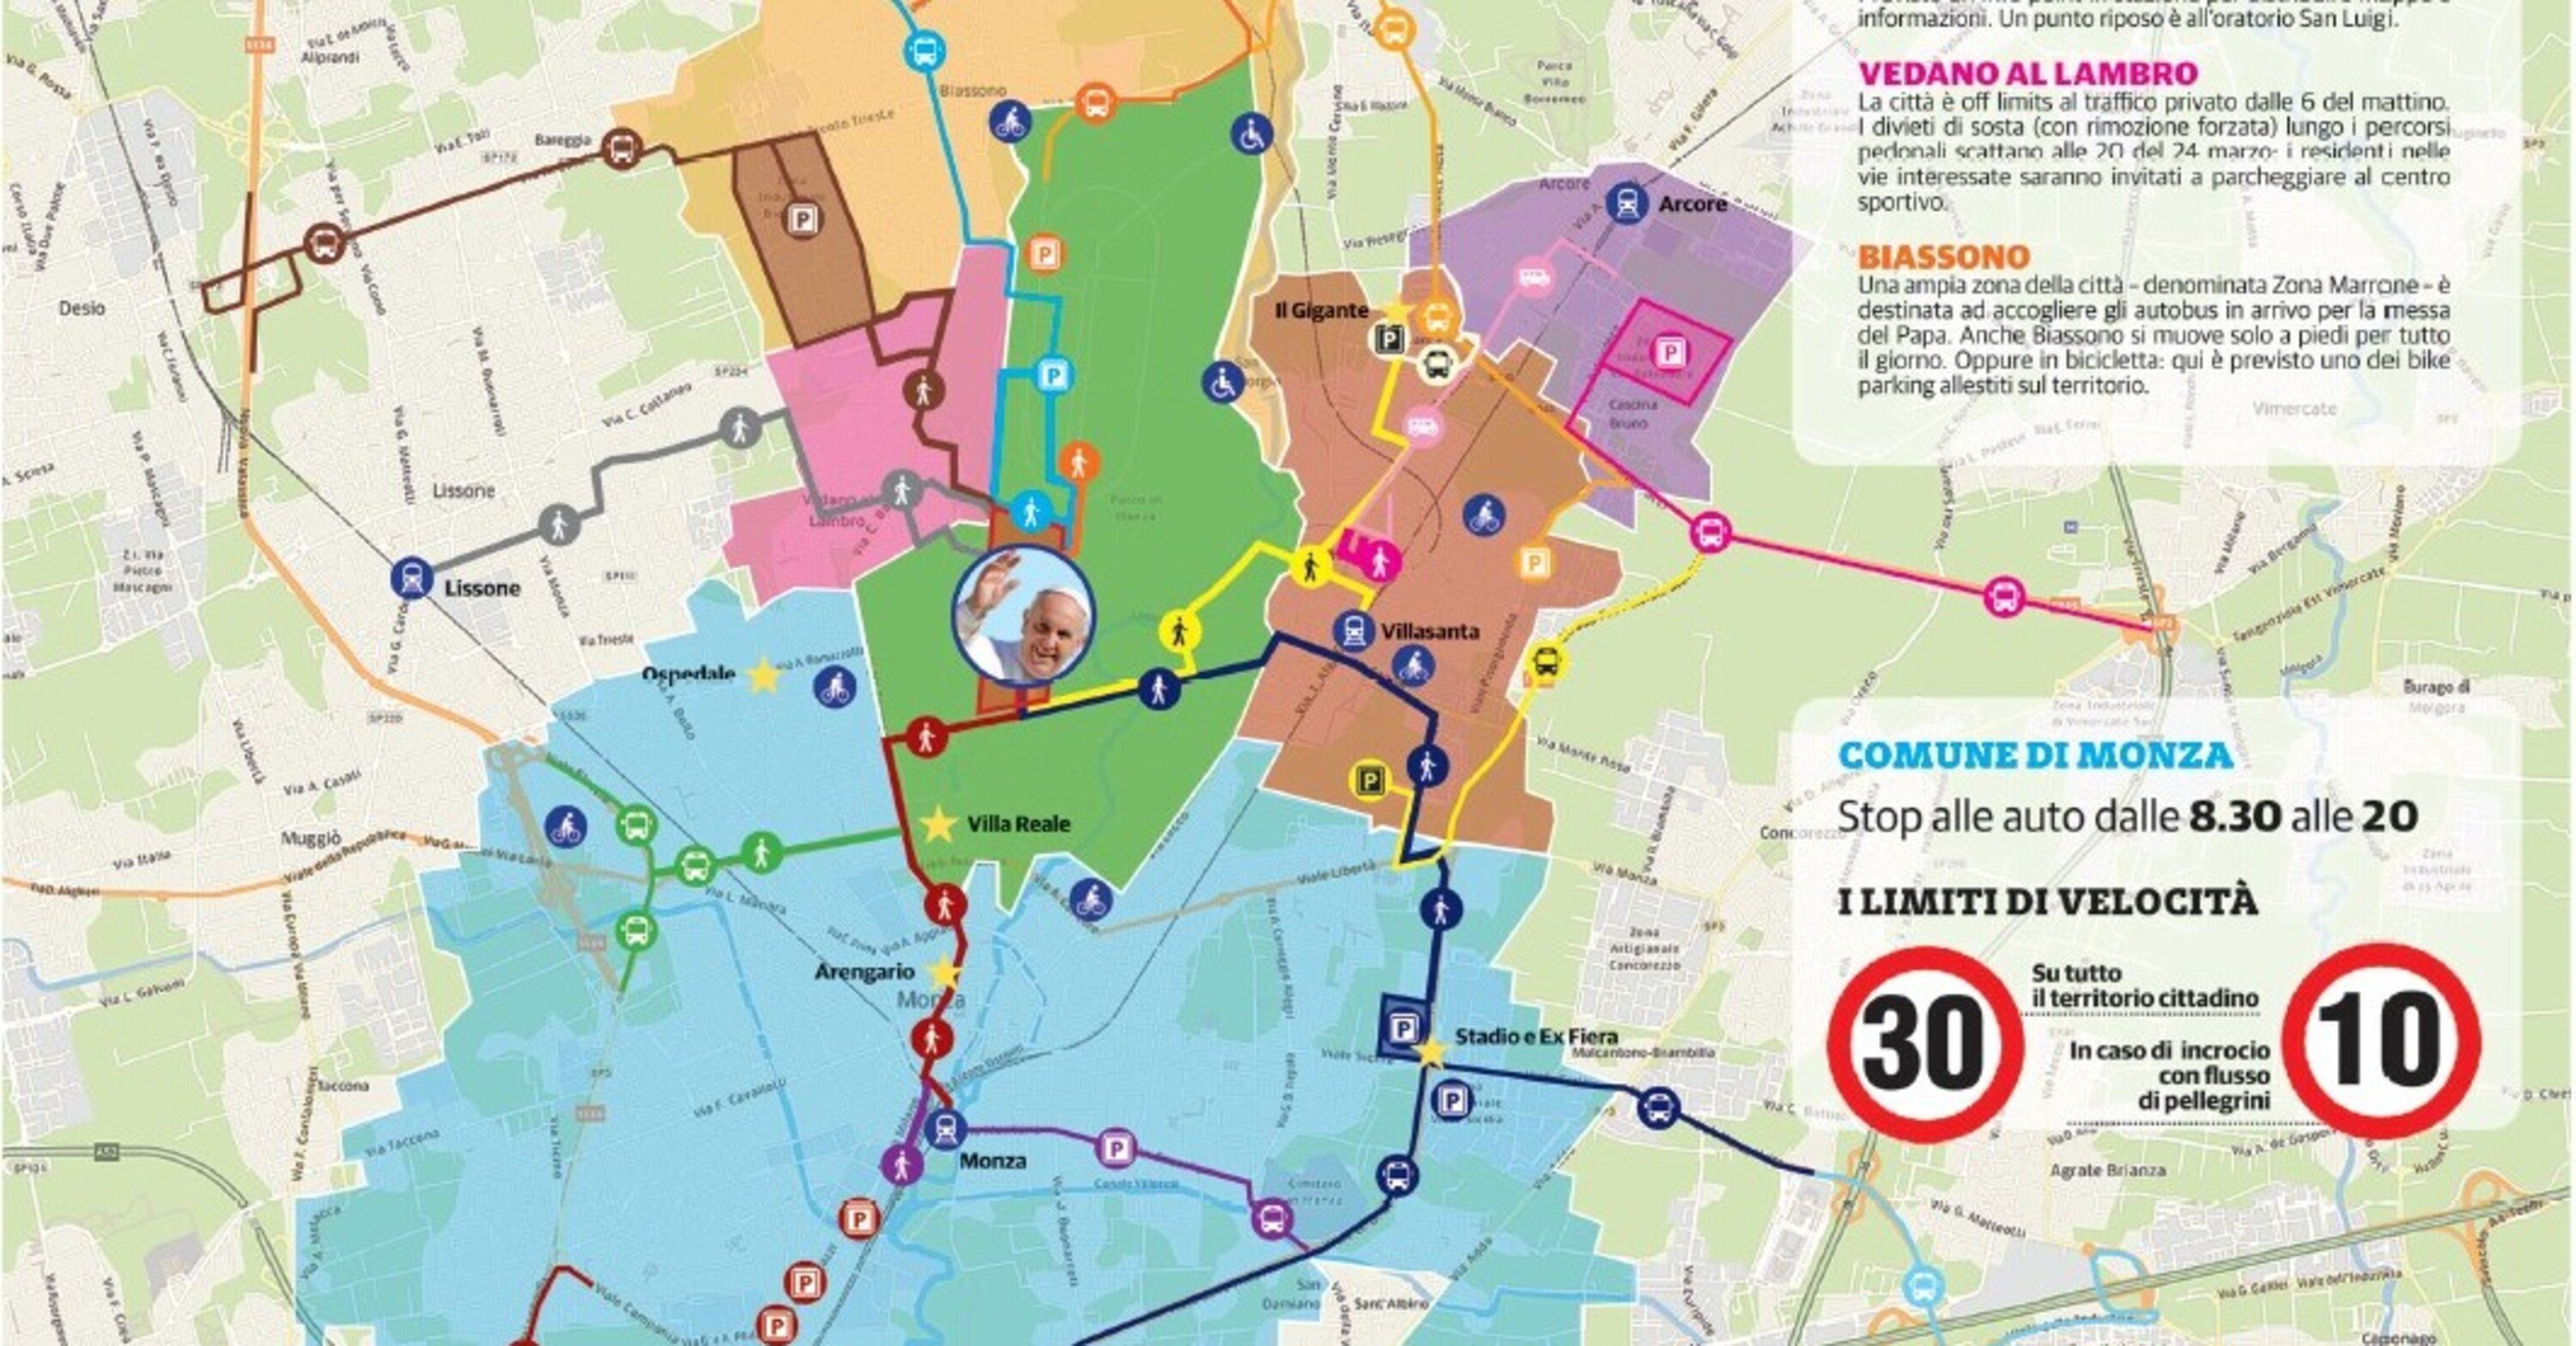 Monza e Autodromo a motori spenti nel weekend: mappa viabilistica per la visita del Papa